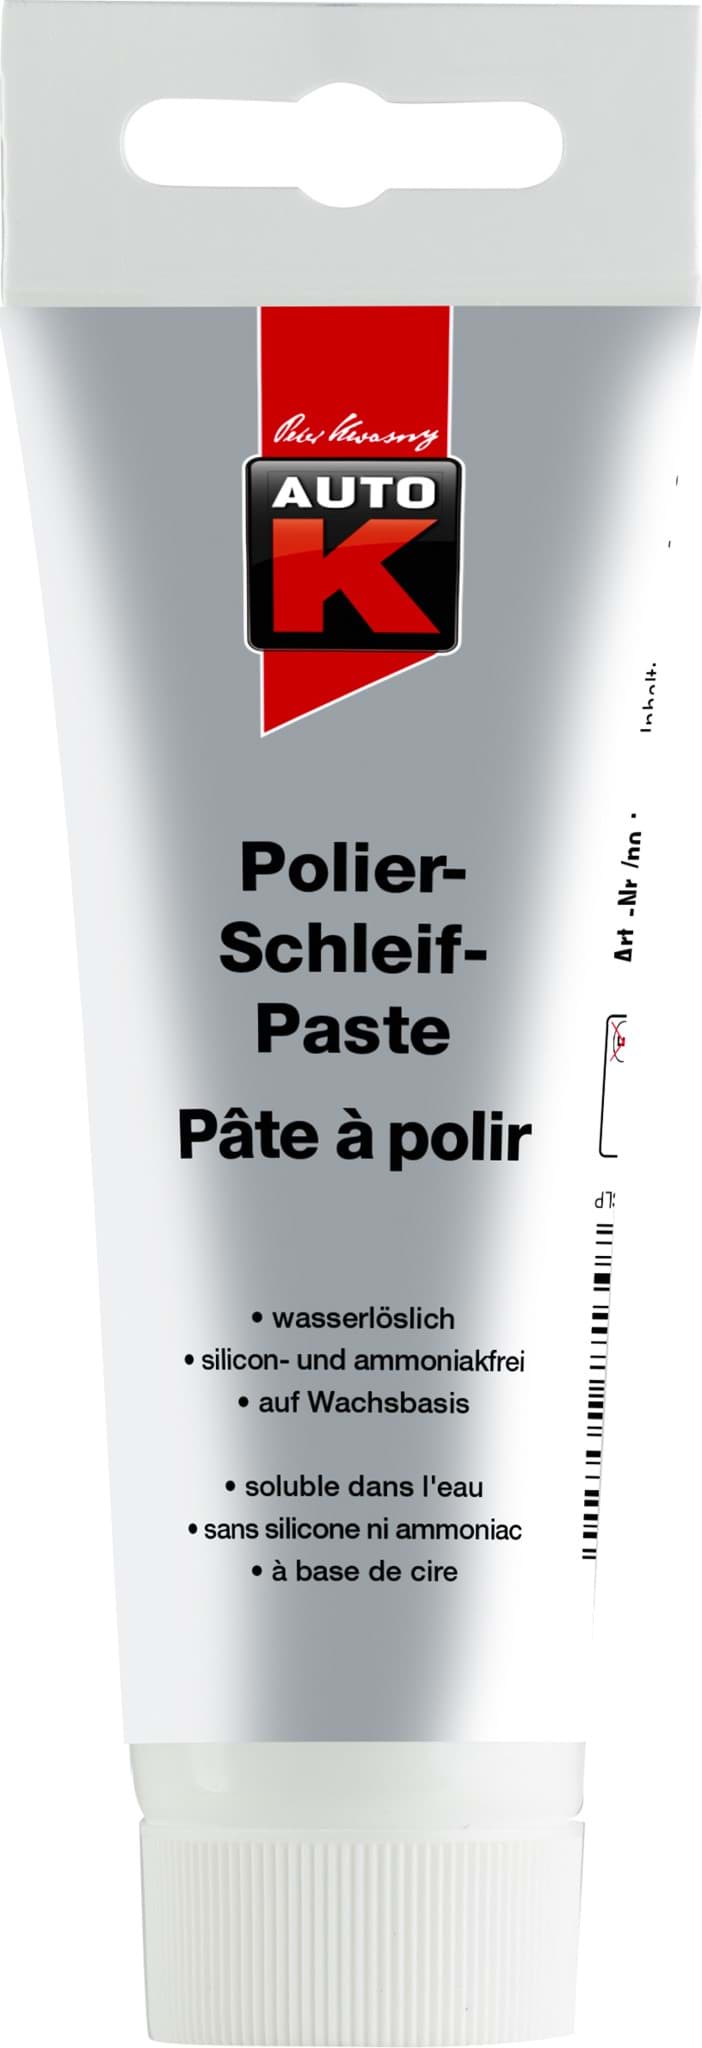 Picture of AutoK Polierschleifpaste 75ml. Schleifpaste Beseitigen von Sprühnebel. 745130